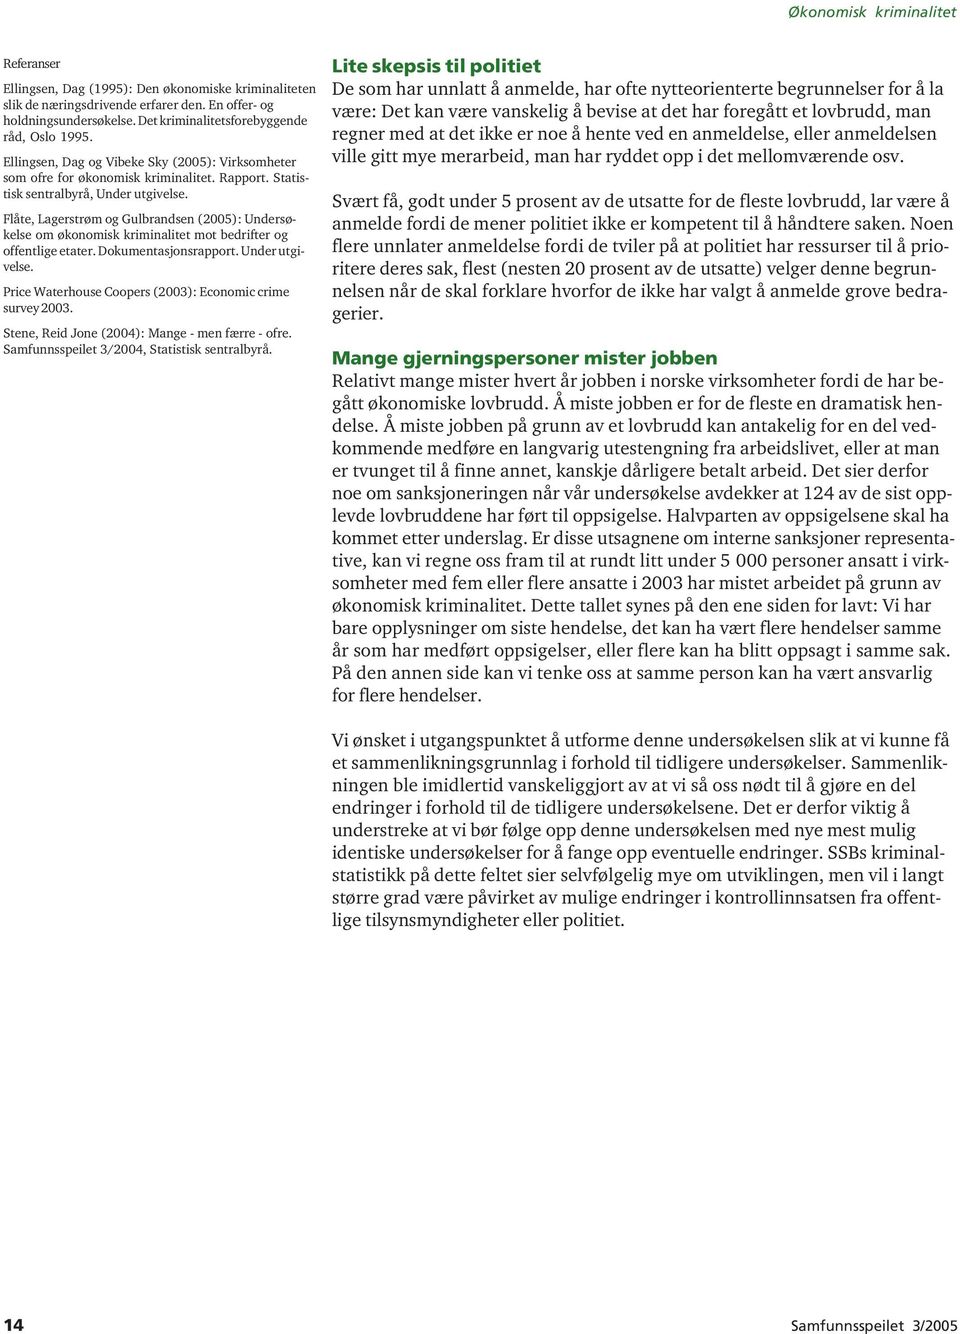 Flåte, Lagerstrøm og Gulbrandsen (2005): Undersøkelse om økonomisk kriminalitet mot bedrifter og offentlige etater. Dokumentasjonsrapport. Under utgivelse.